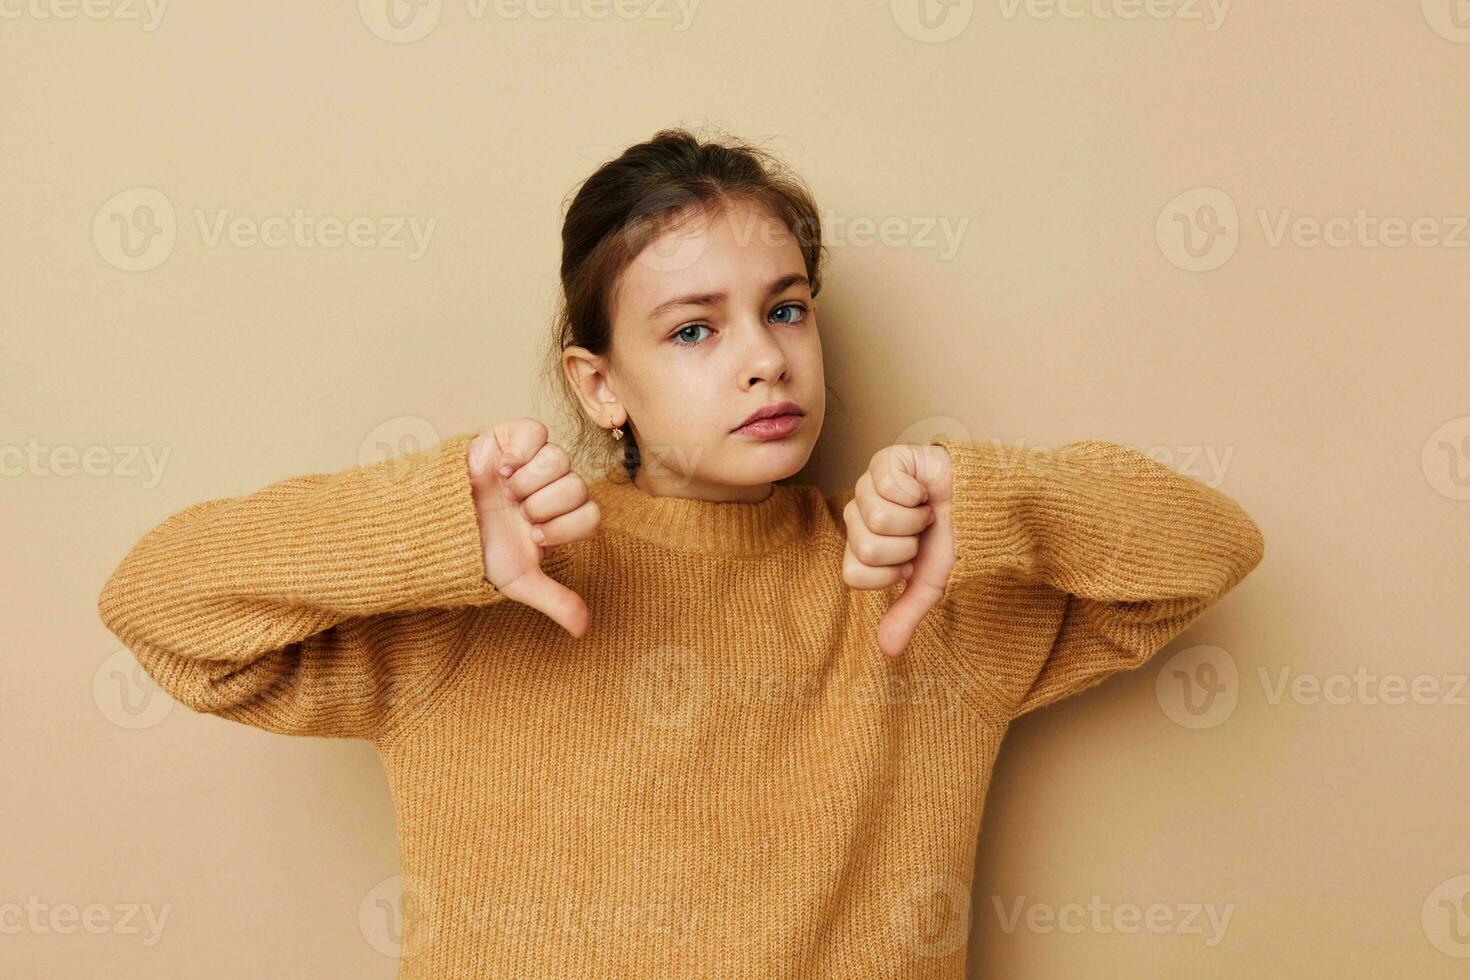 retrato de contento sonriente niño niña en suéter posando mano gestos infancia inalterado foto